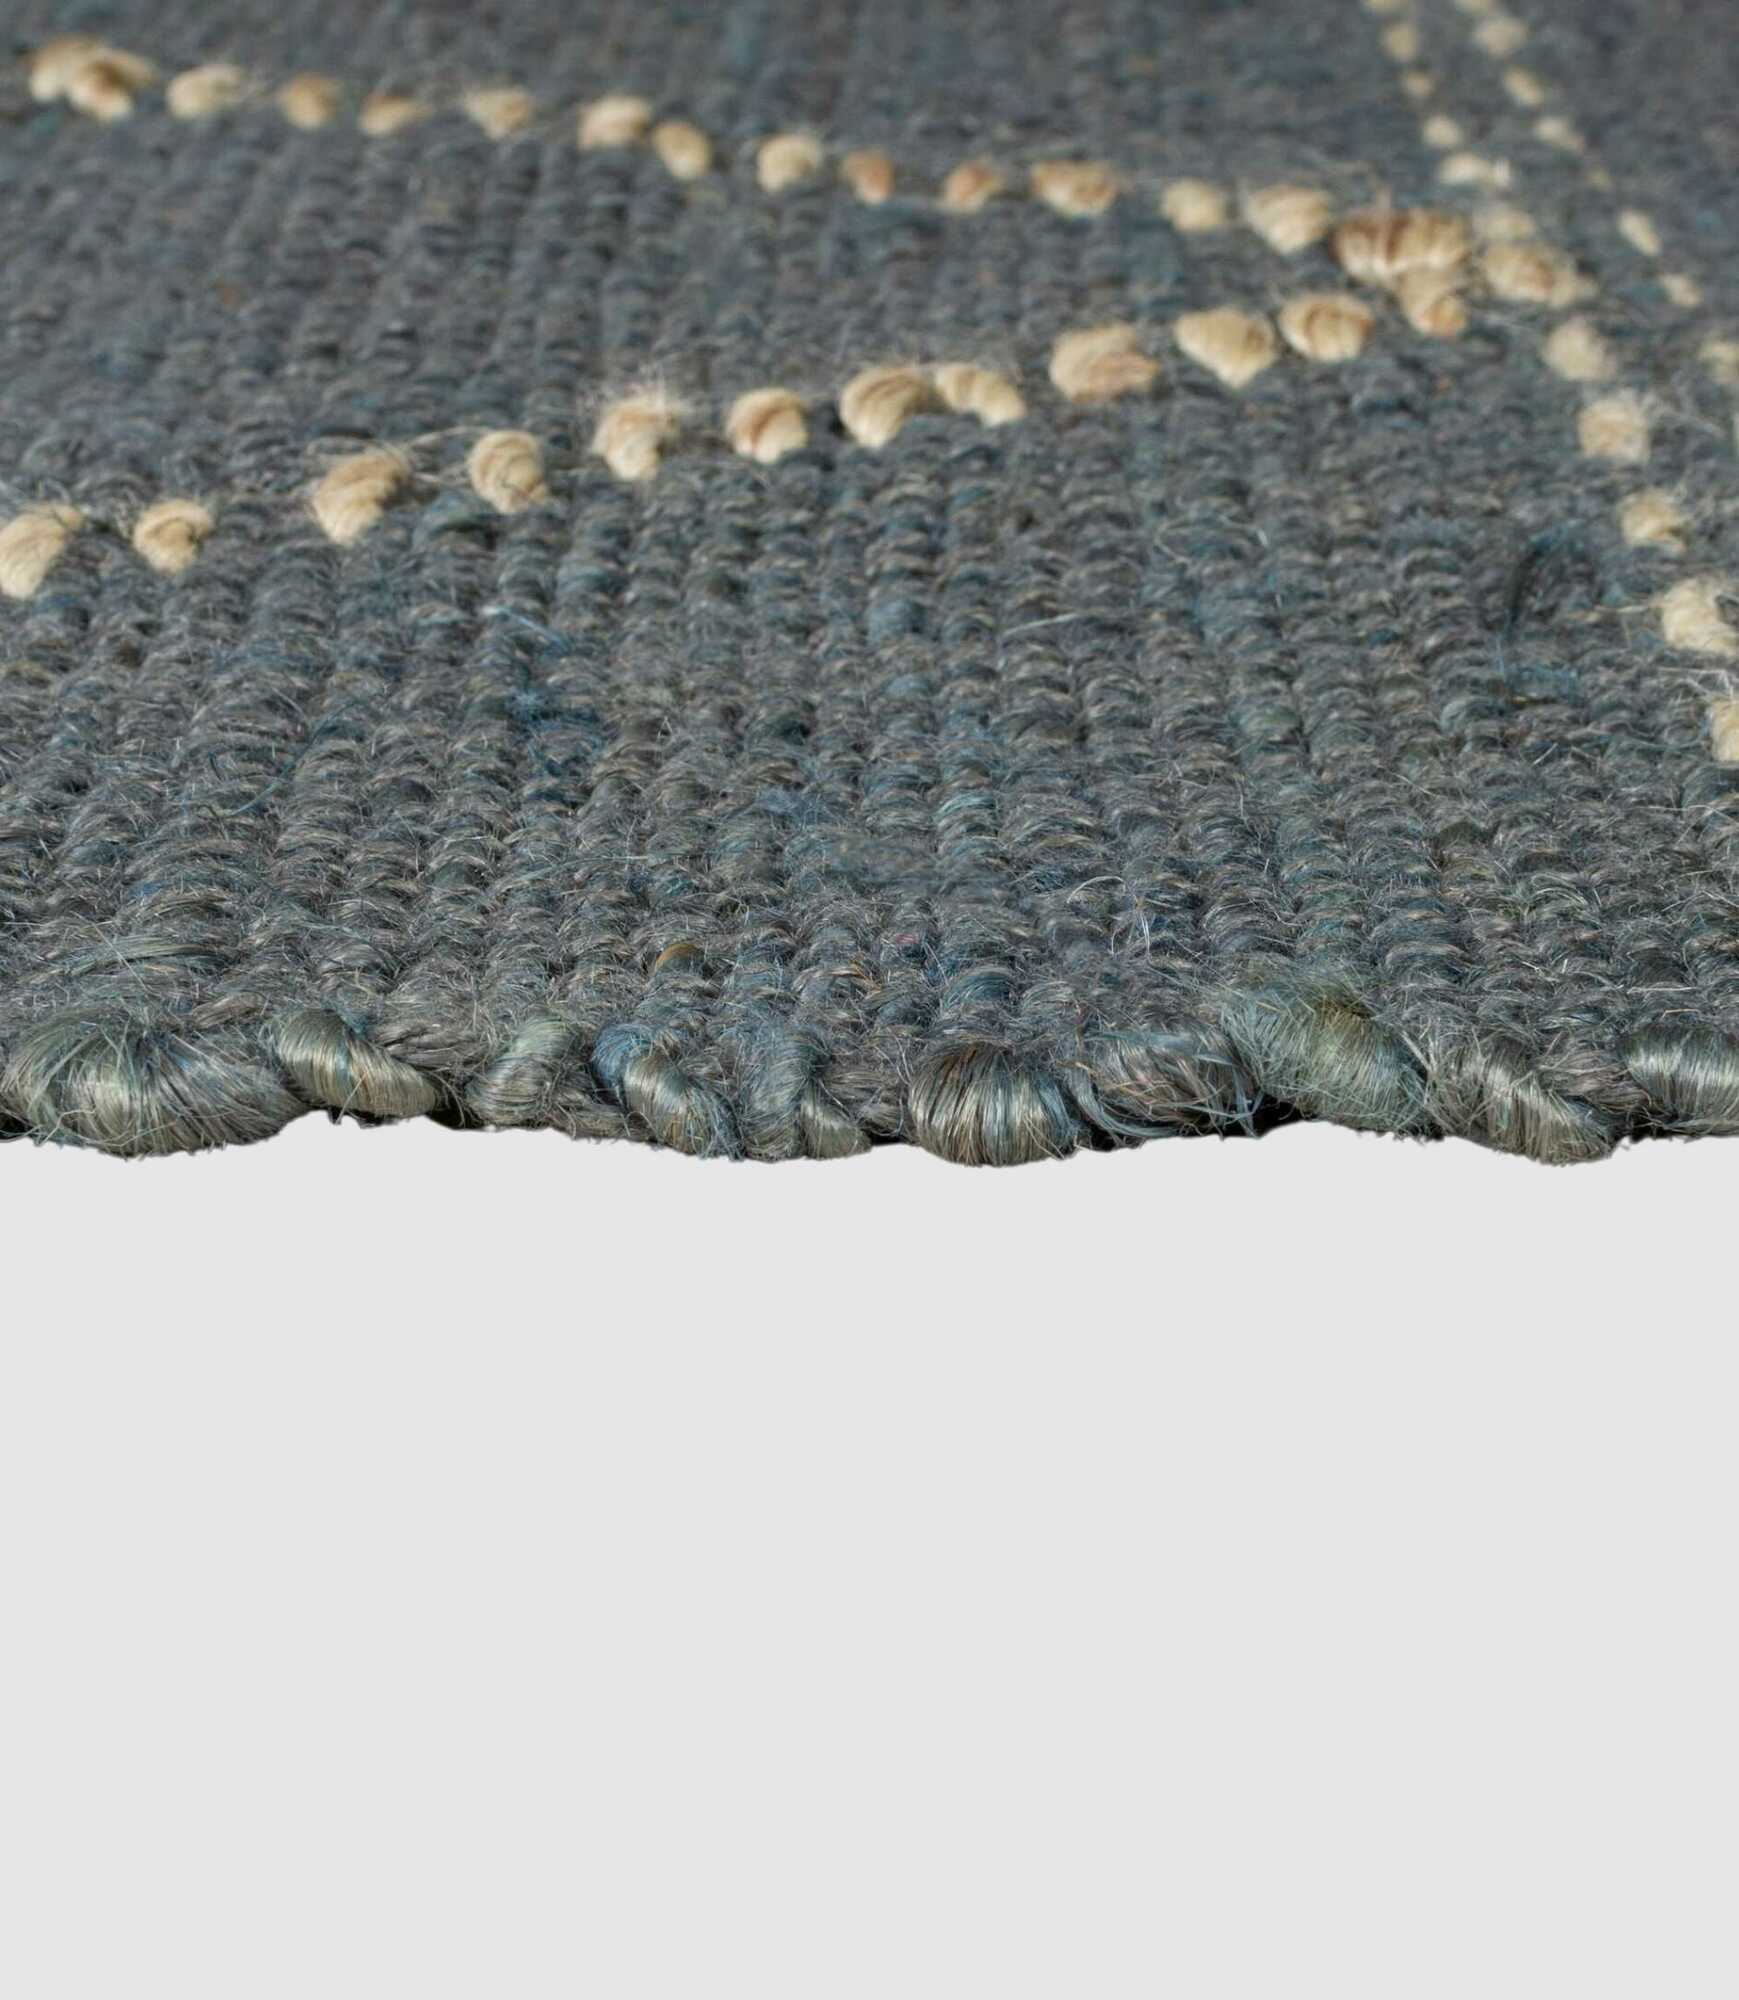 Jute-Teppich Rhombi Handgewebt Blau 120x170 1